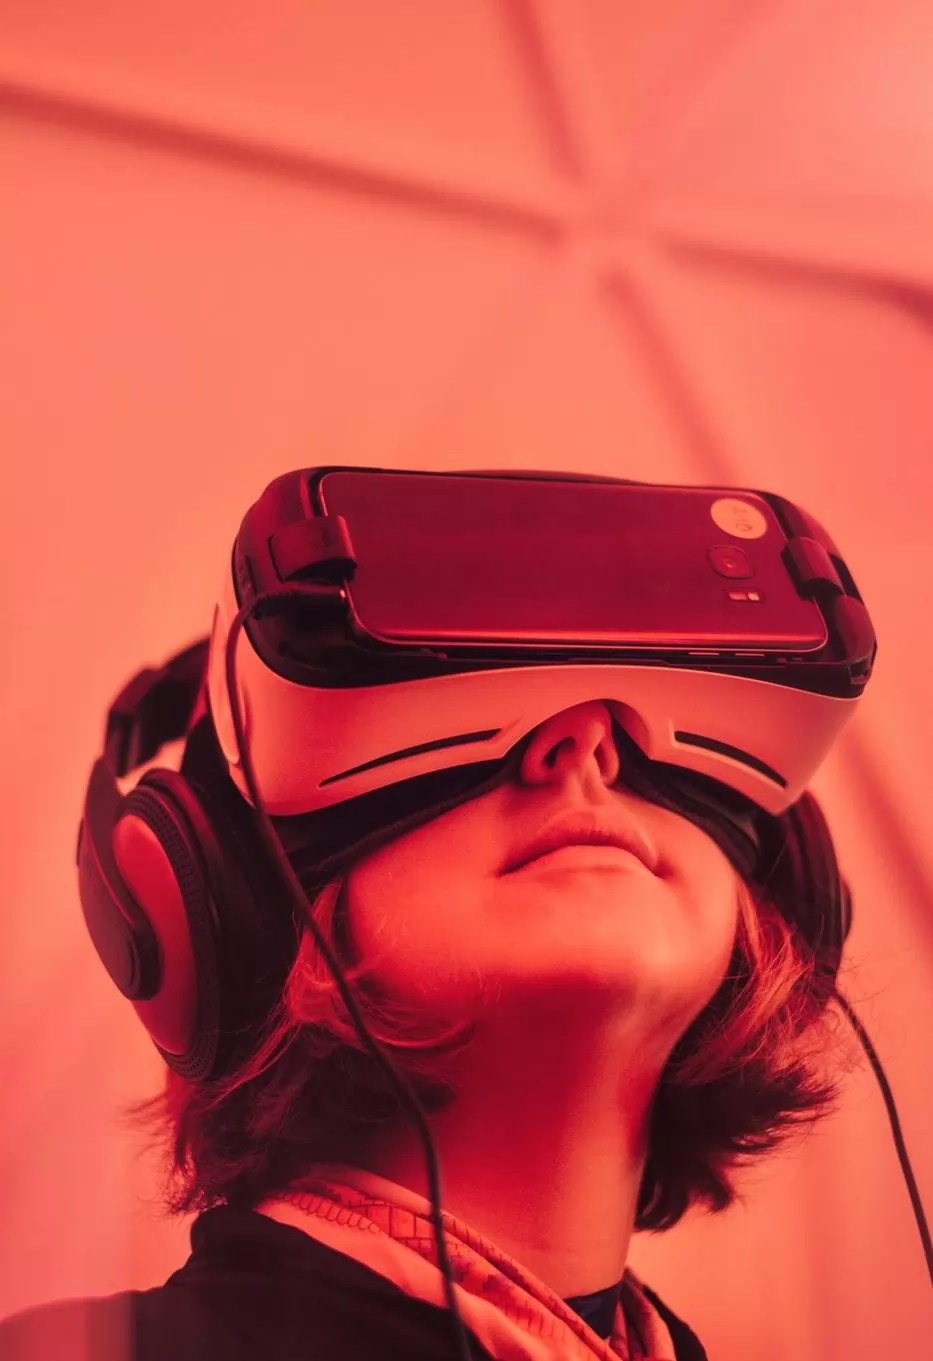 le marché de la réalité augmentée, virtuelle et mixte